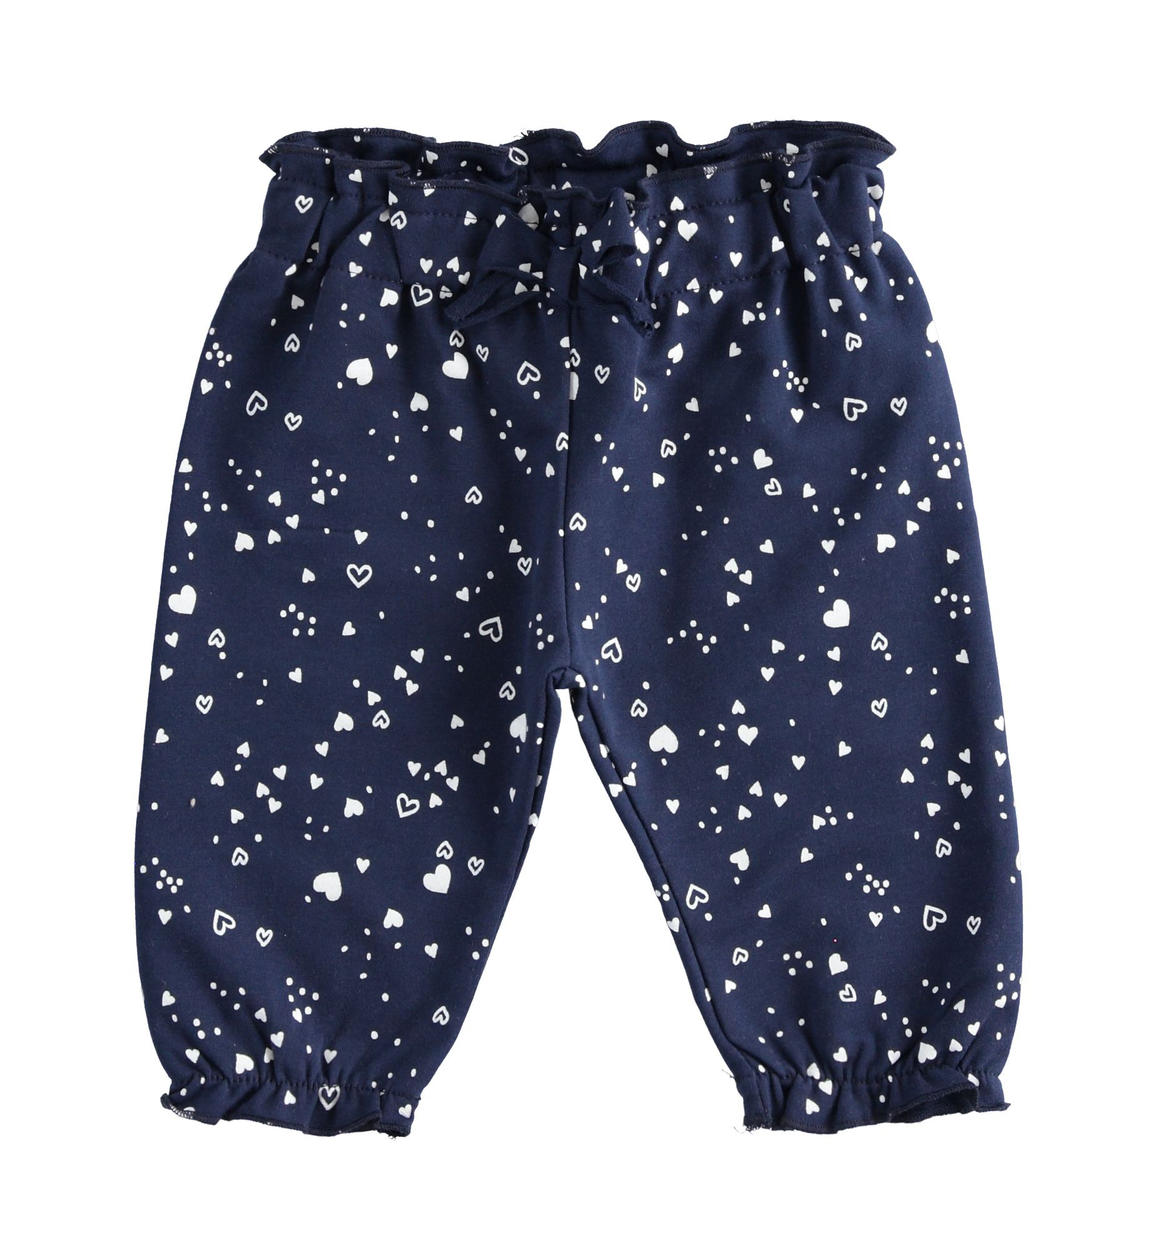 Pantaloni neonata fantasia di cuori BLU iDO